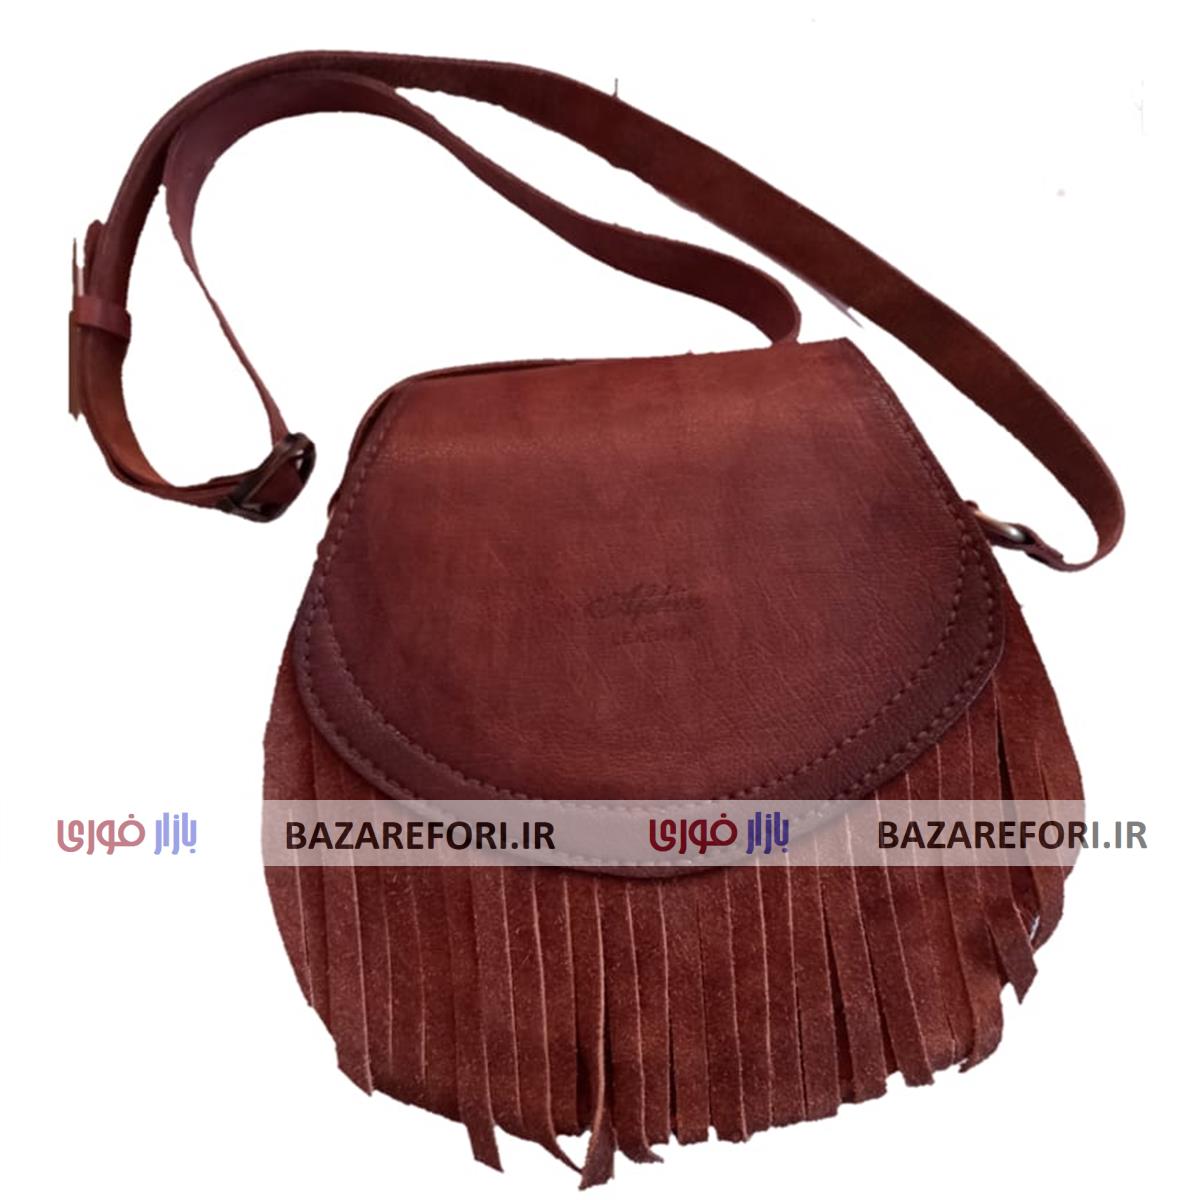 کیف زنانه رودوشی طرح سرخ پوستی لِدِر Leather